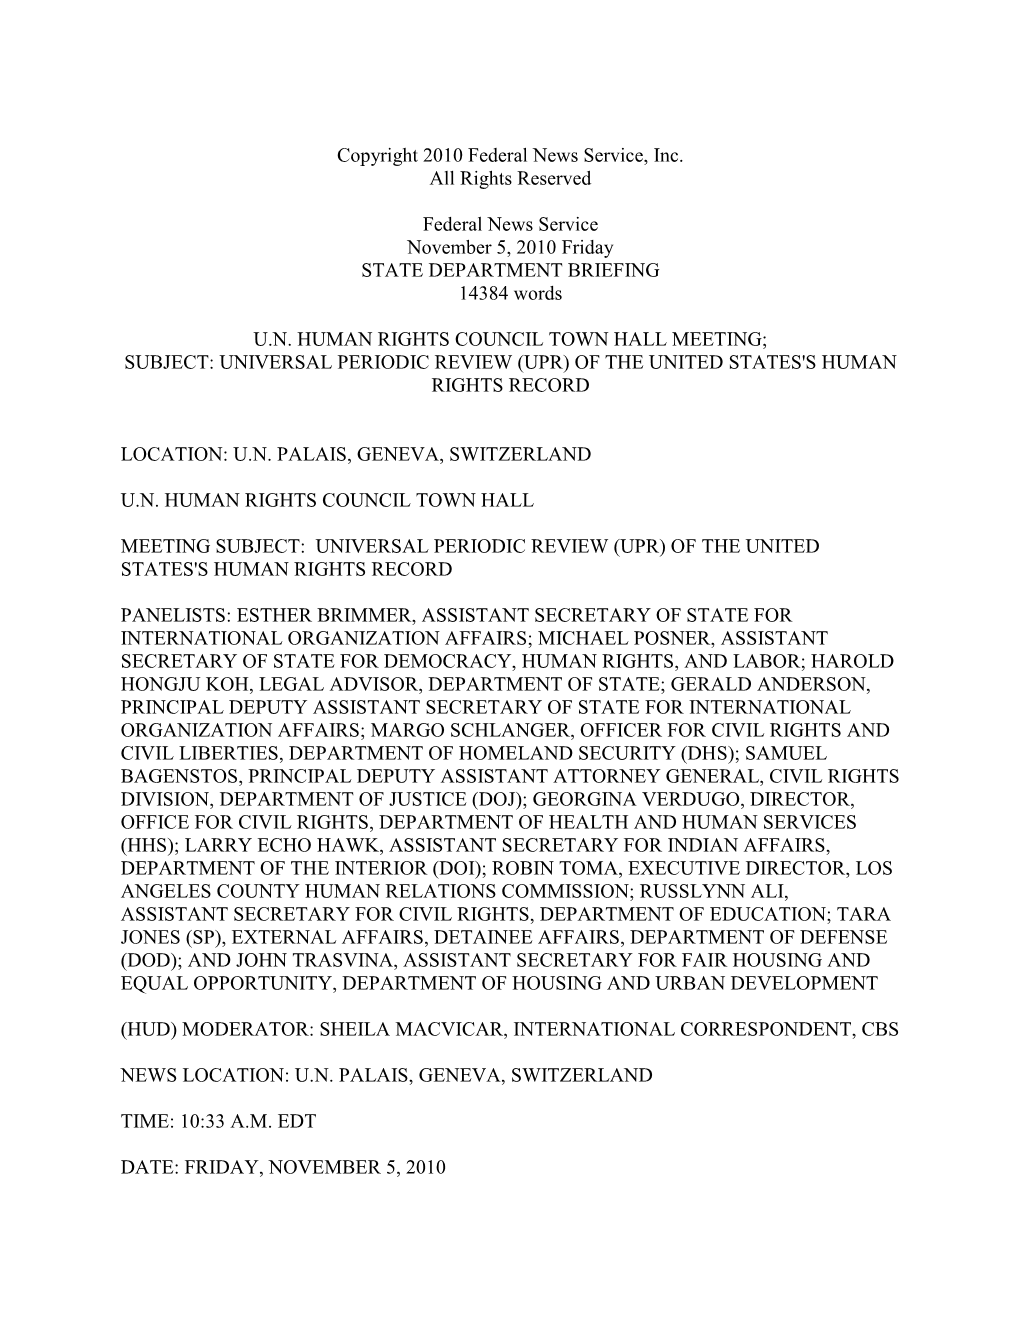 02.05.10 UPR Town Hall Transcript.Pdf